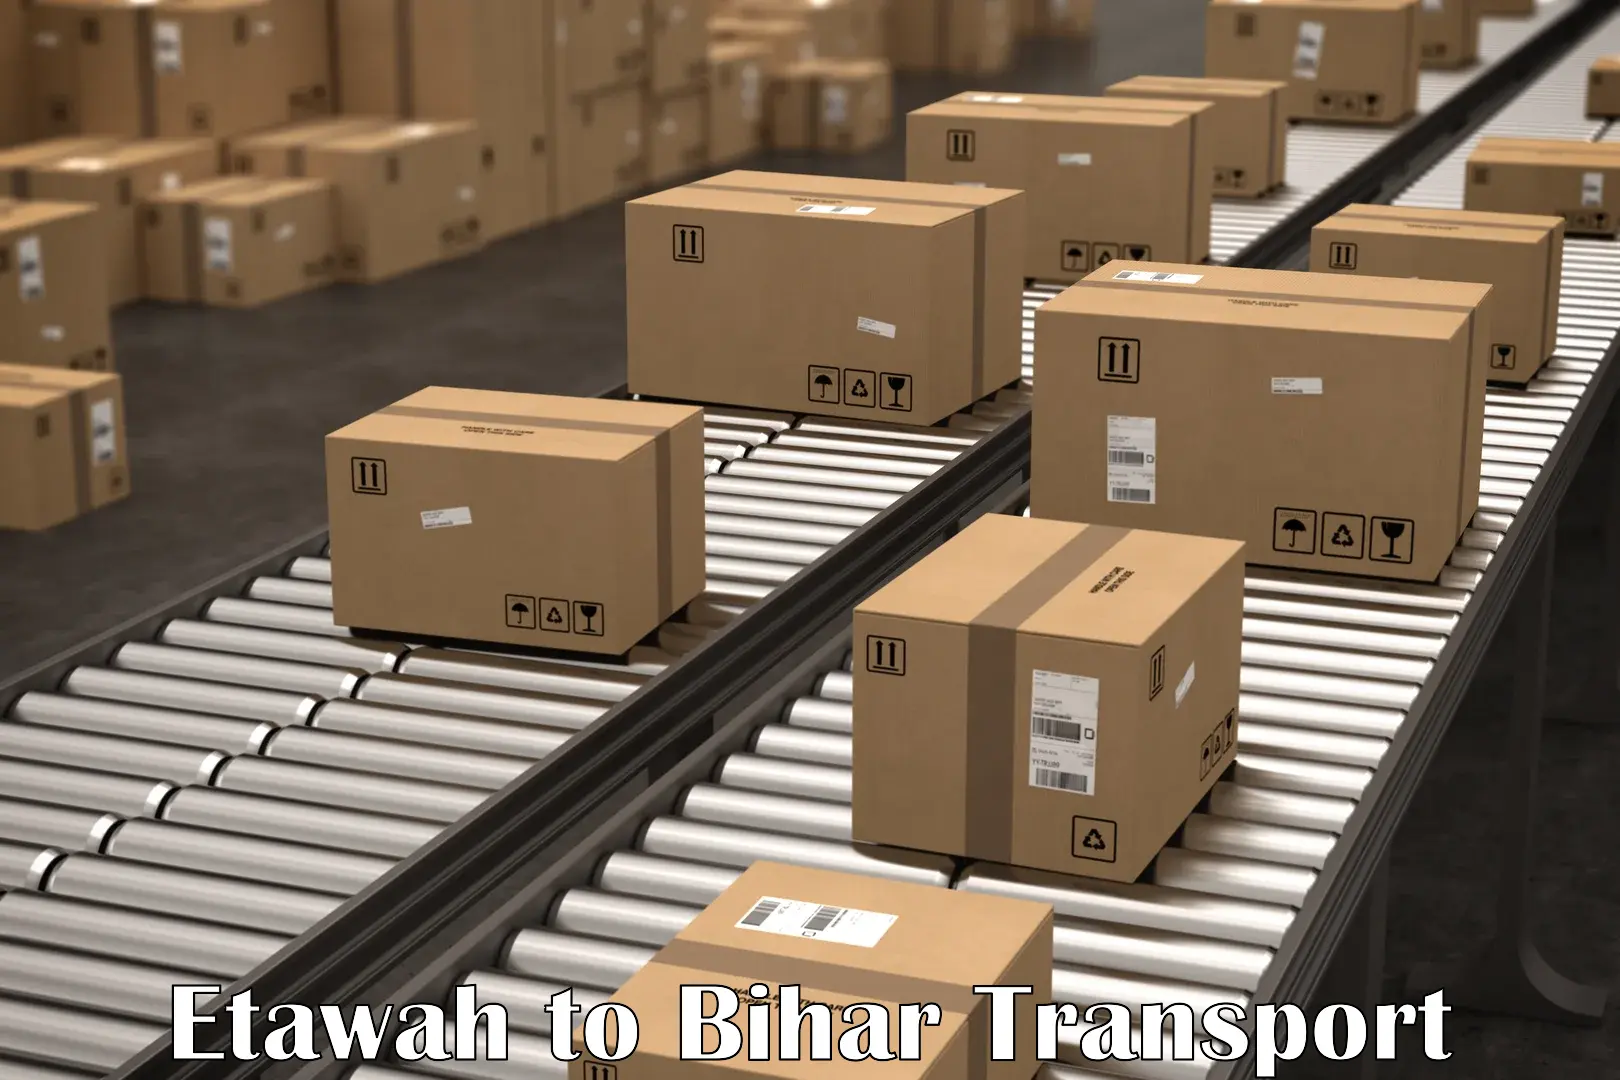 Container transport service Etawah to Kharagpur Munger